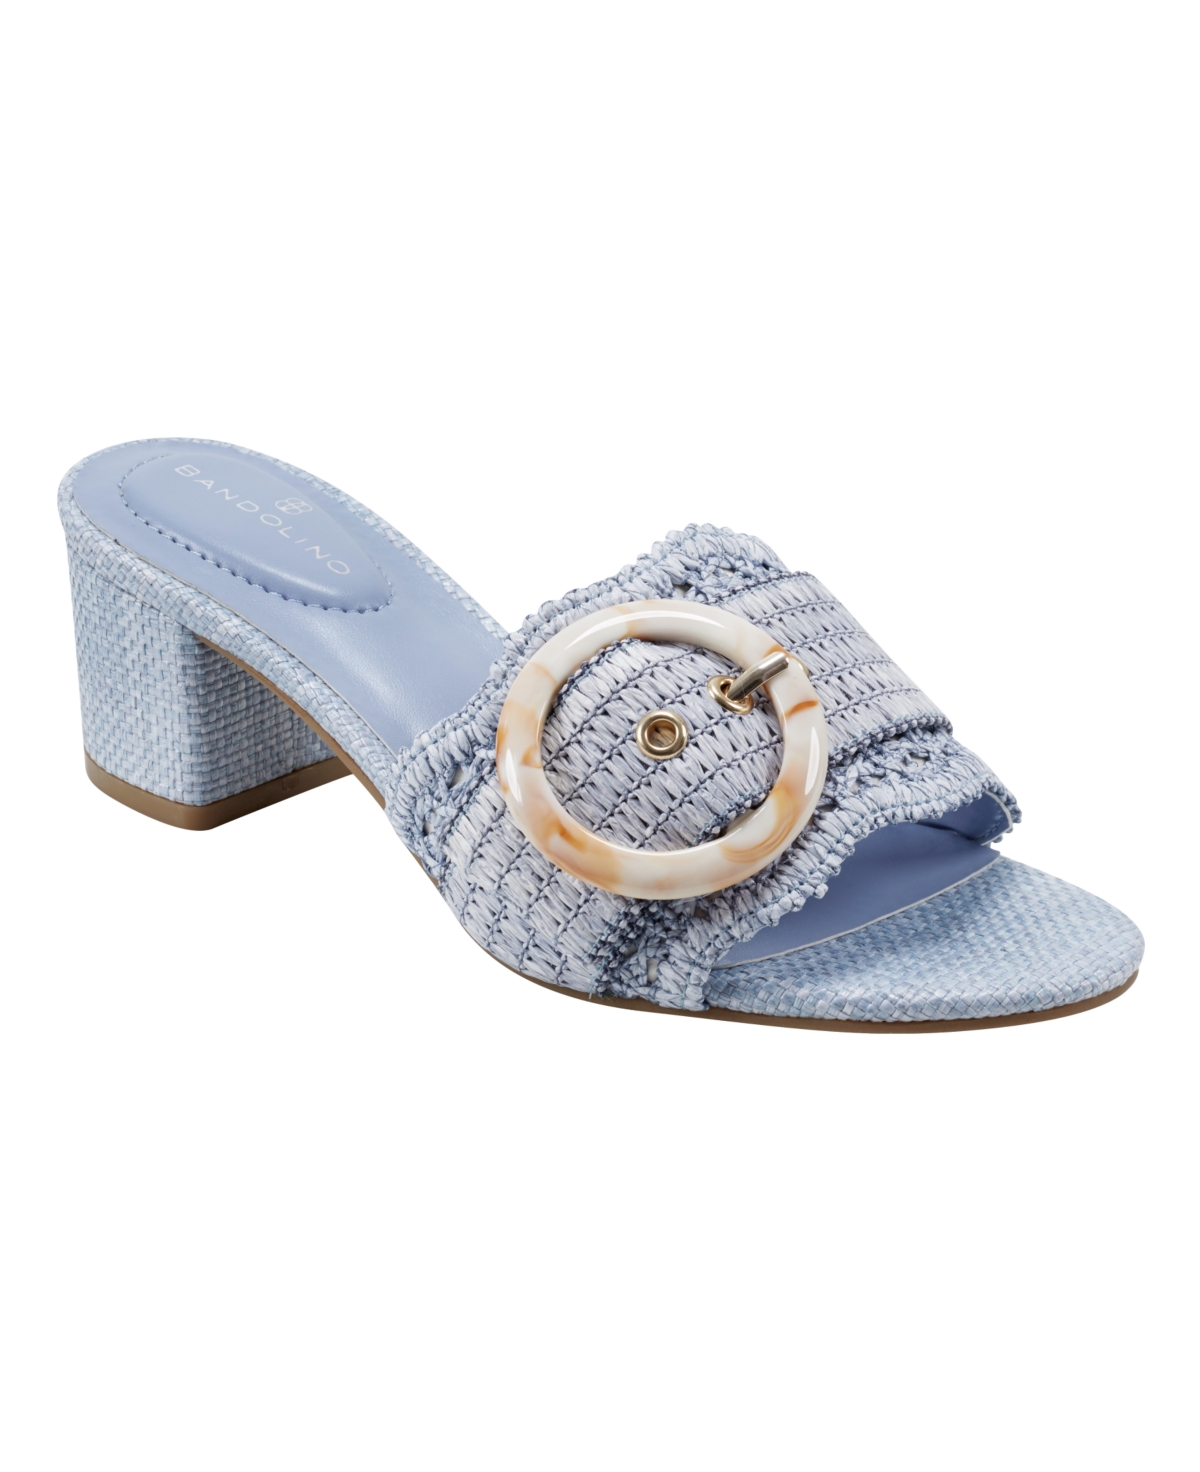 Women's Anni Raffia Crochet Block Heel Slide Dress Sandals - Light Blue